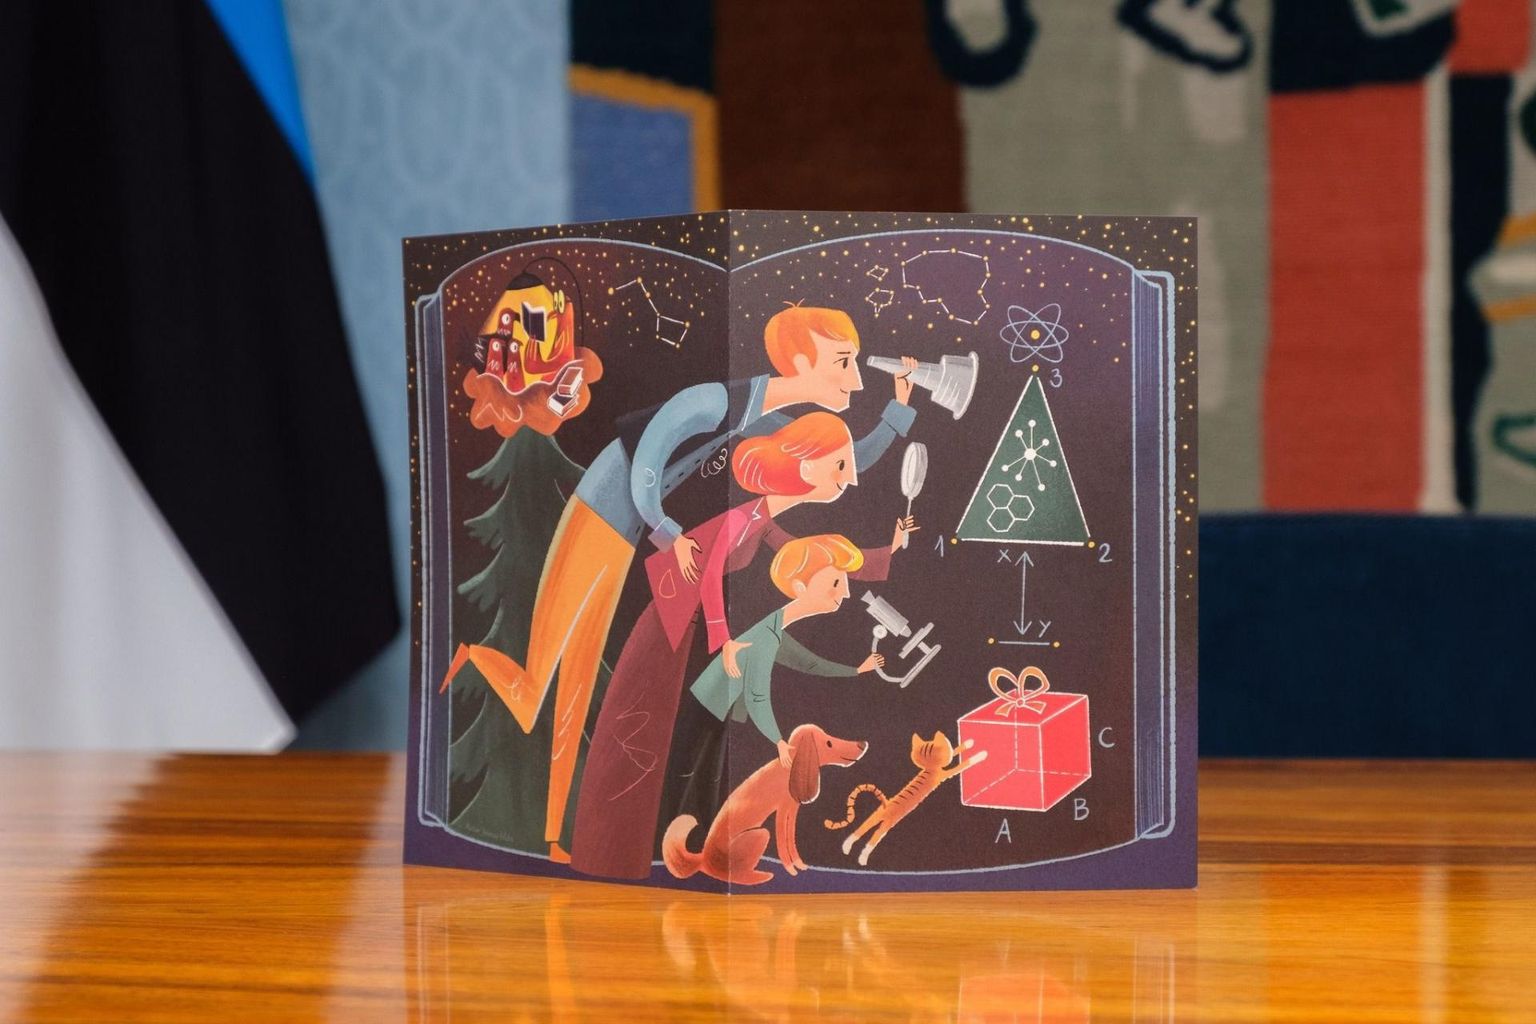 Joonas Sildre kujundatud jõulukaart.